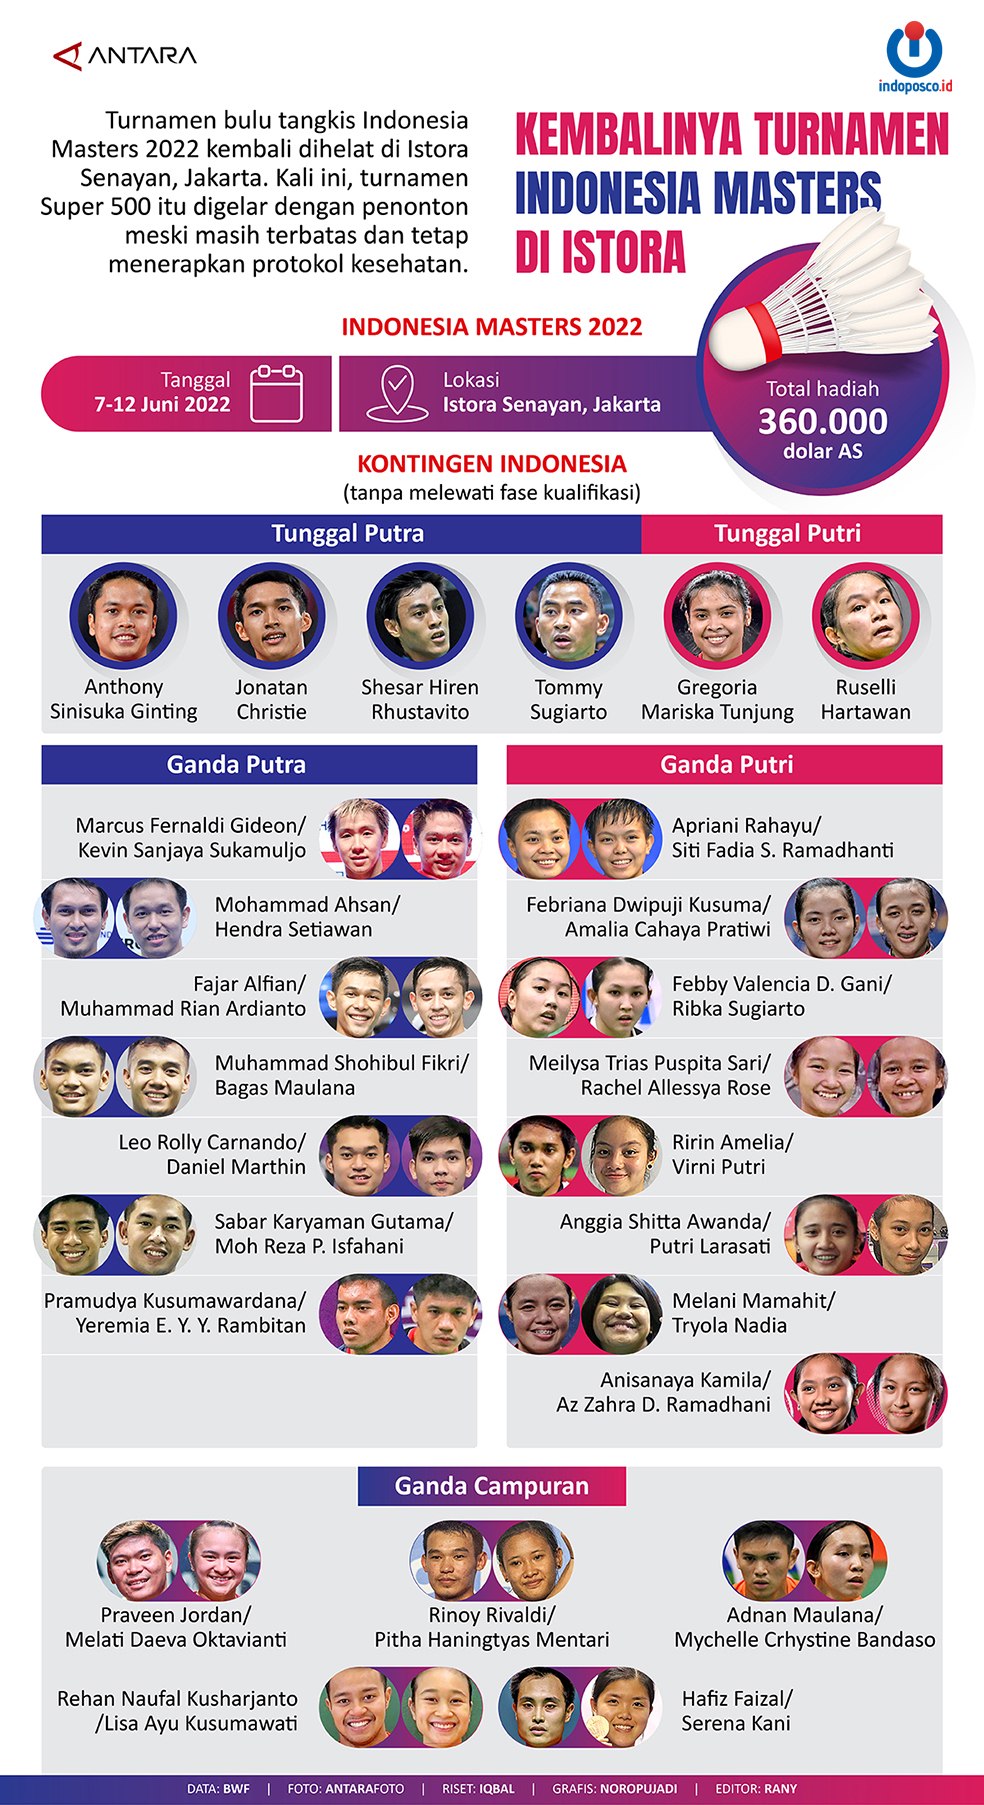 Kembalinya Turnamen Indonesia Masters Di Istora